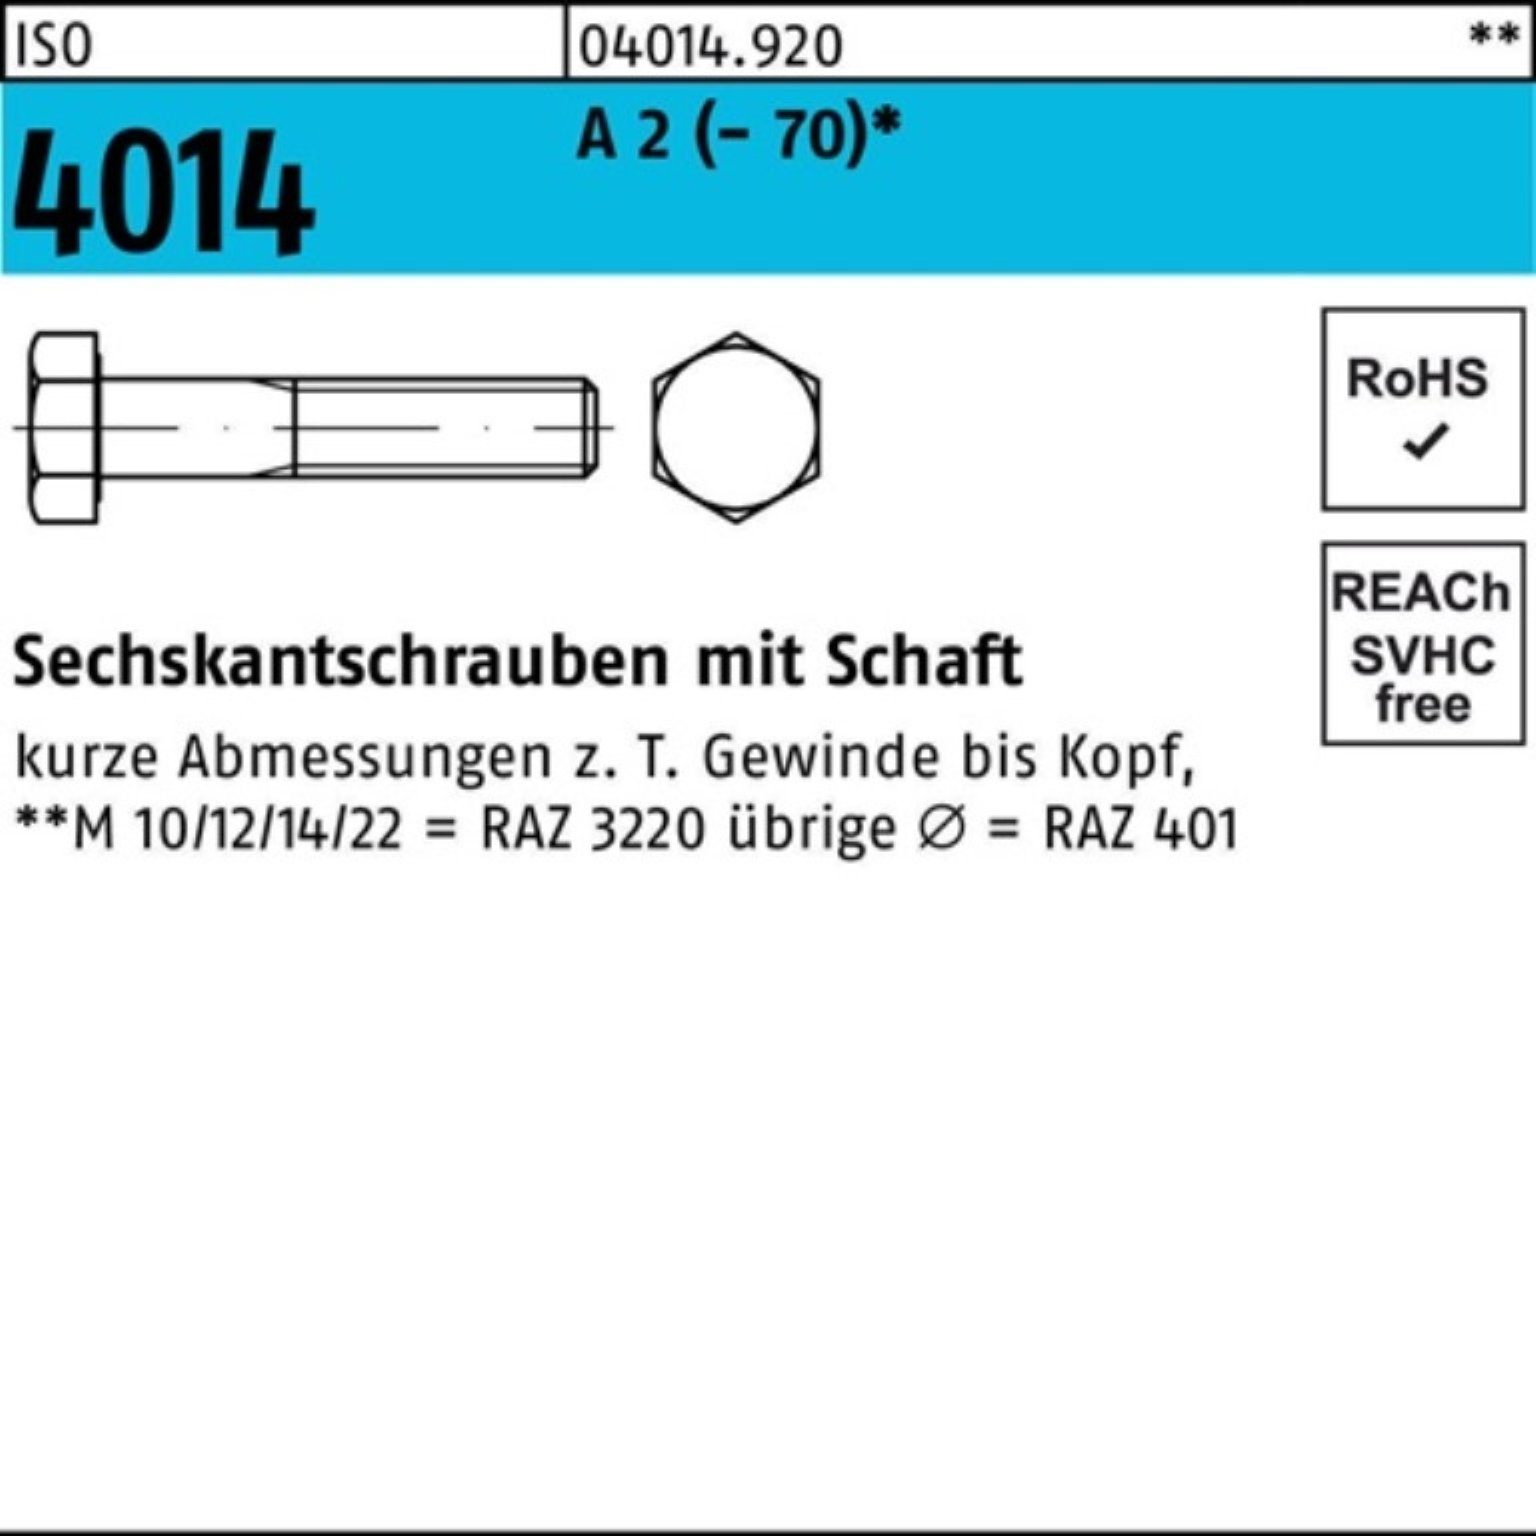 Bufab Sechskantschraube 100er Pack Sechskantschraube ISO 4014 Schaft M16x 65 A 2 (70) 50 St